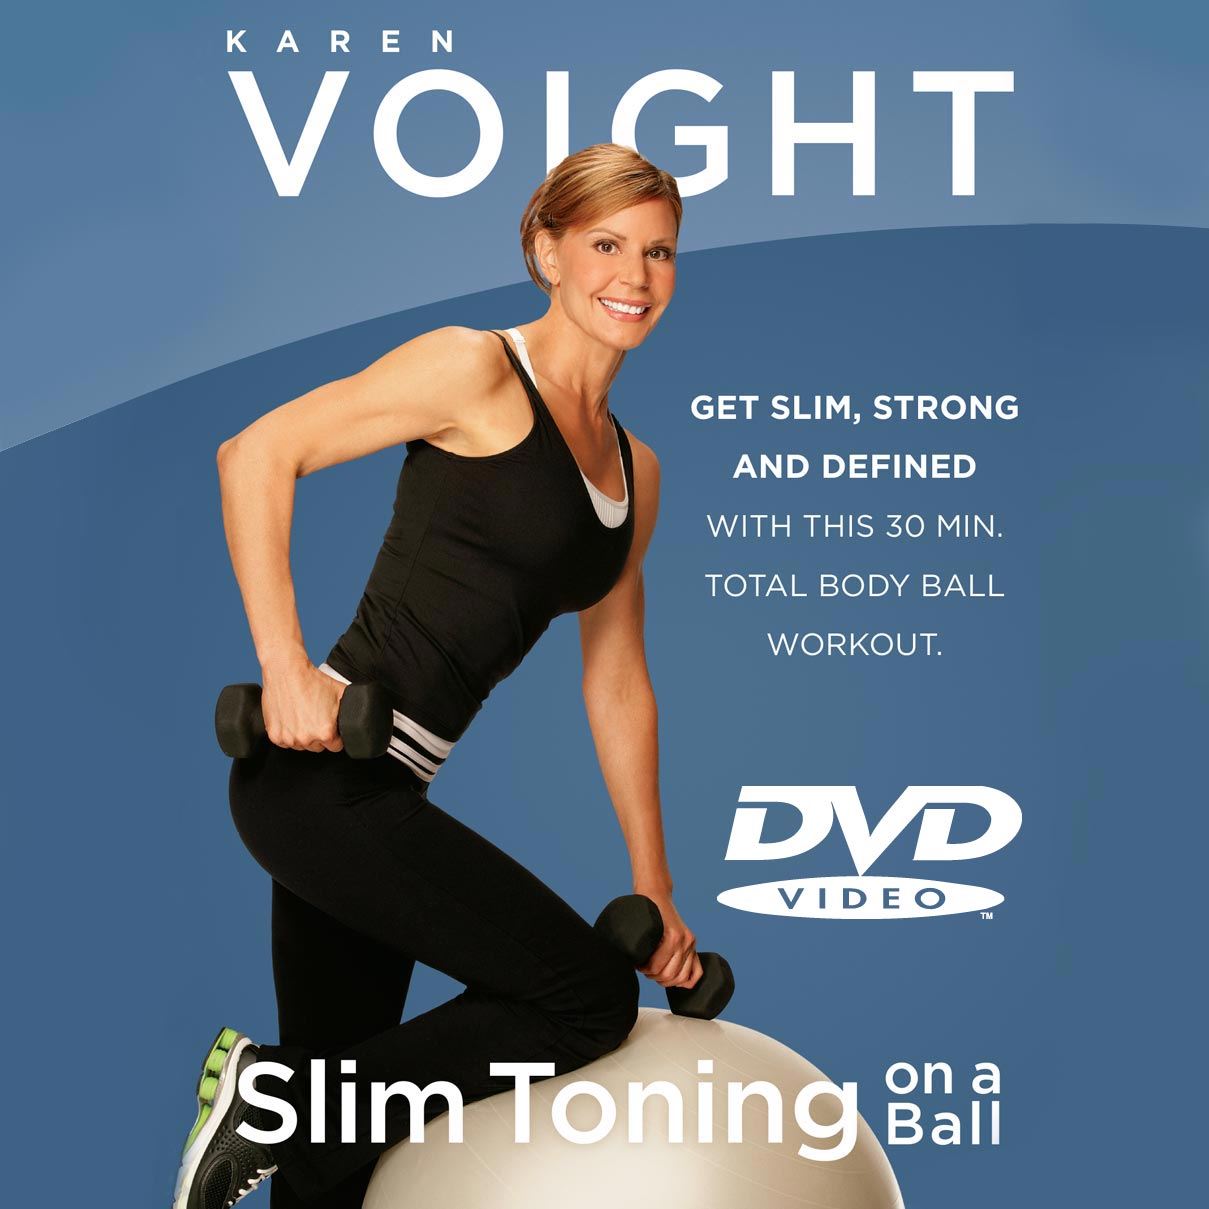 Slim Toning On A Ball DVD — Karen Voight Fitness